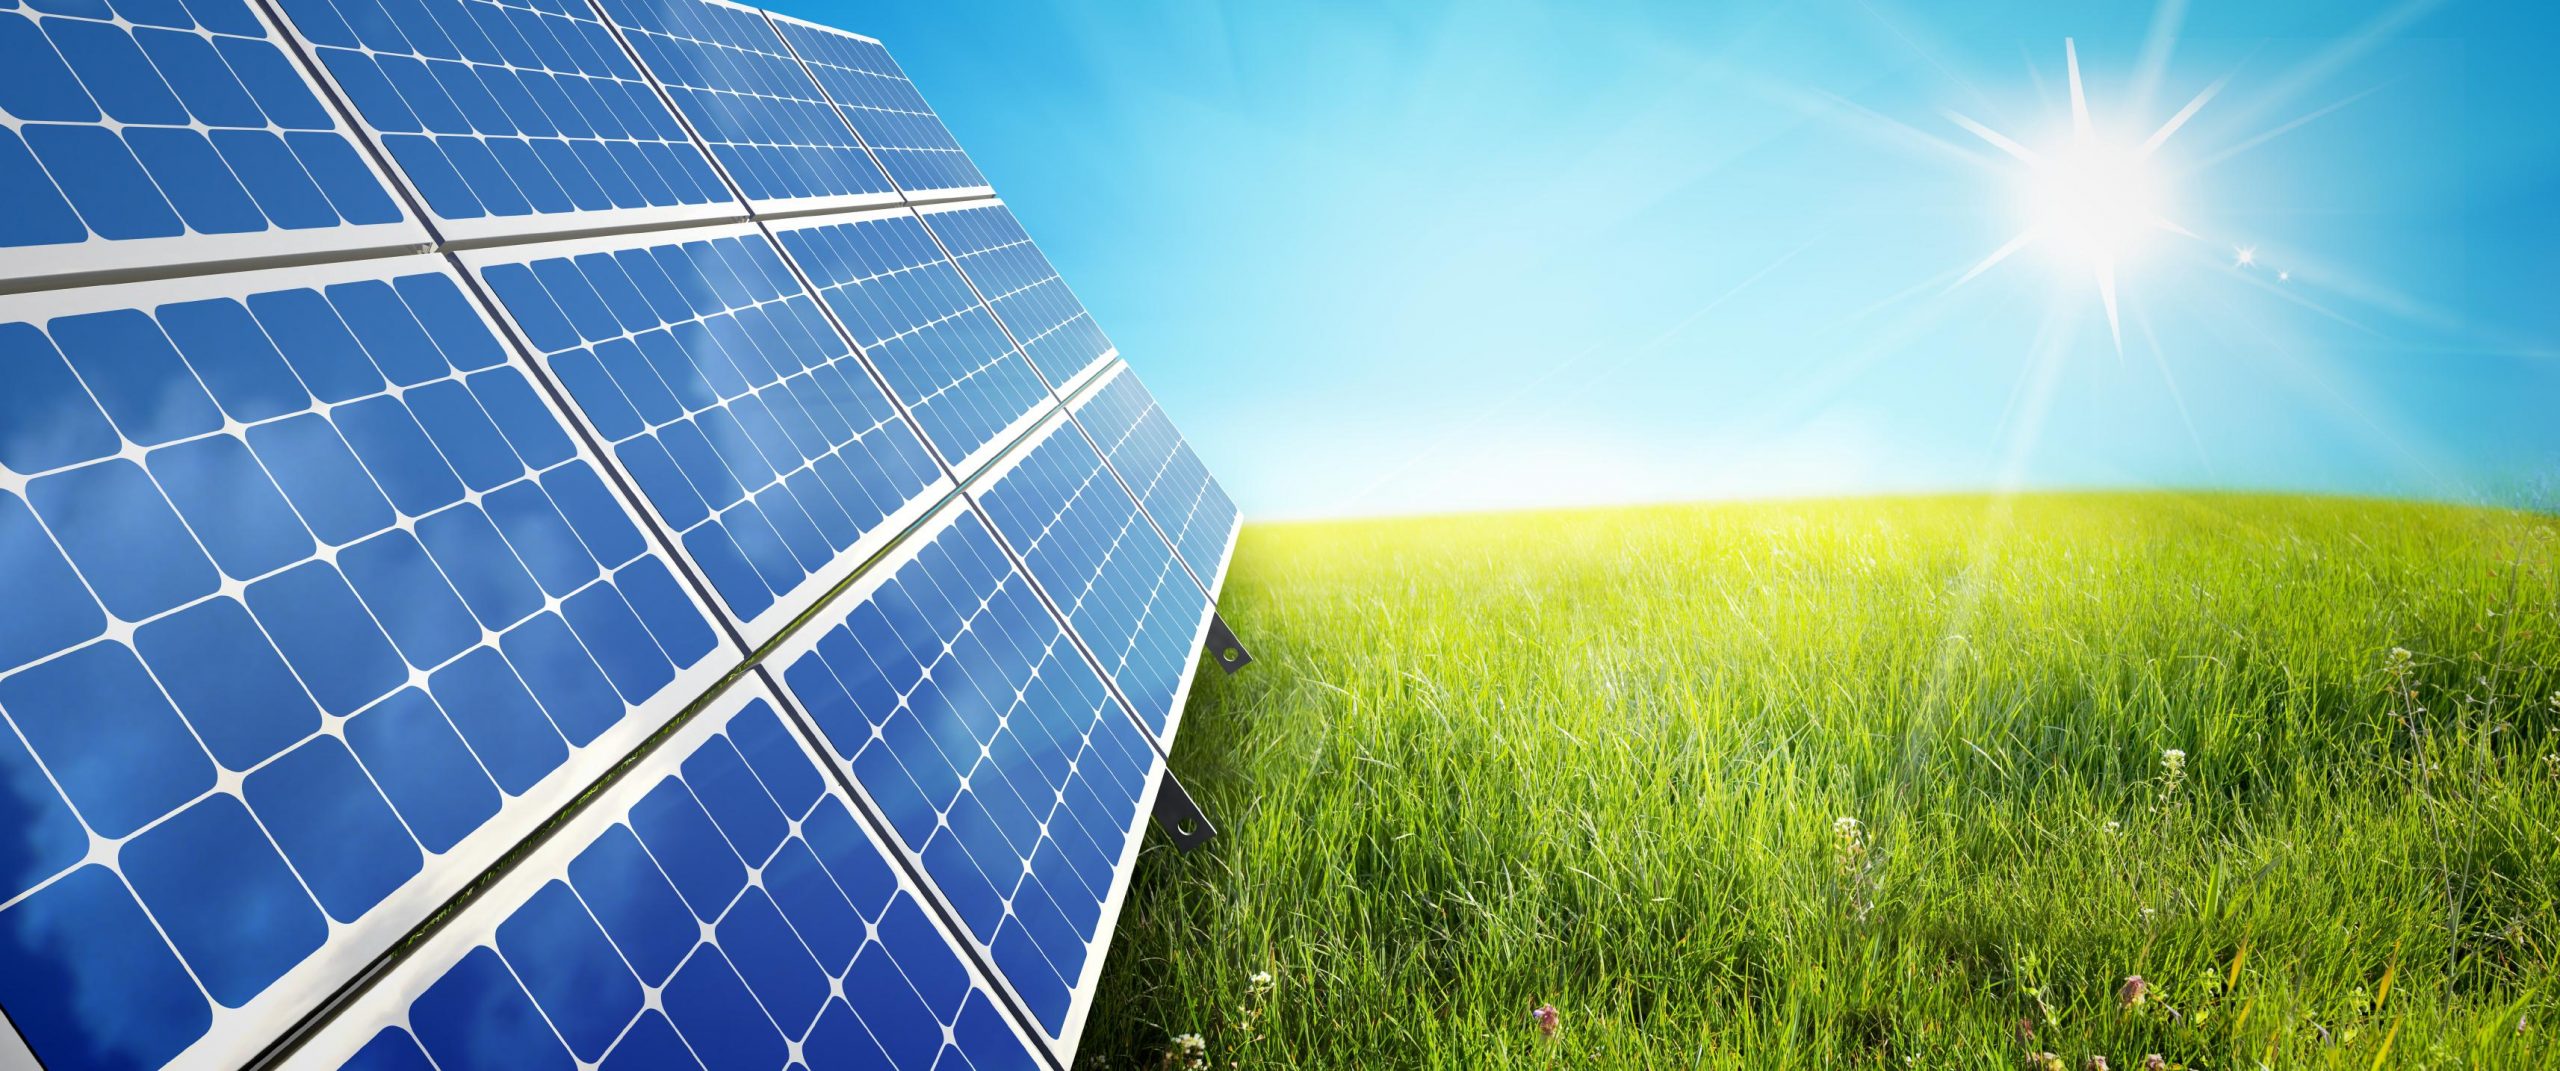 IEA Başkanı Birol: “Güneş, 2050’de dünyanın en büyük enerji kaynağı olacak”